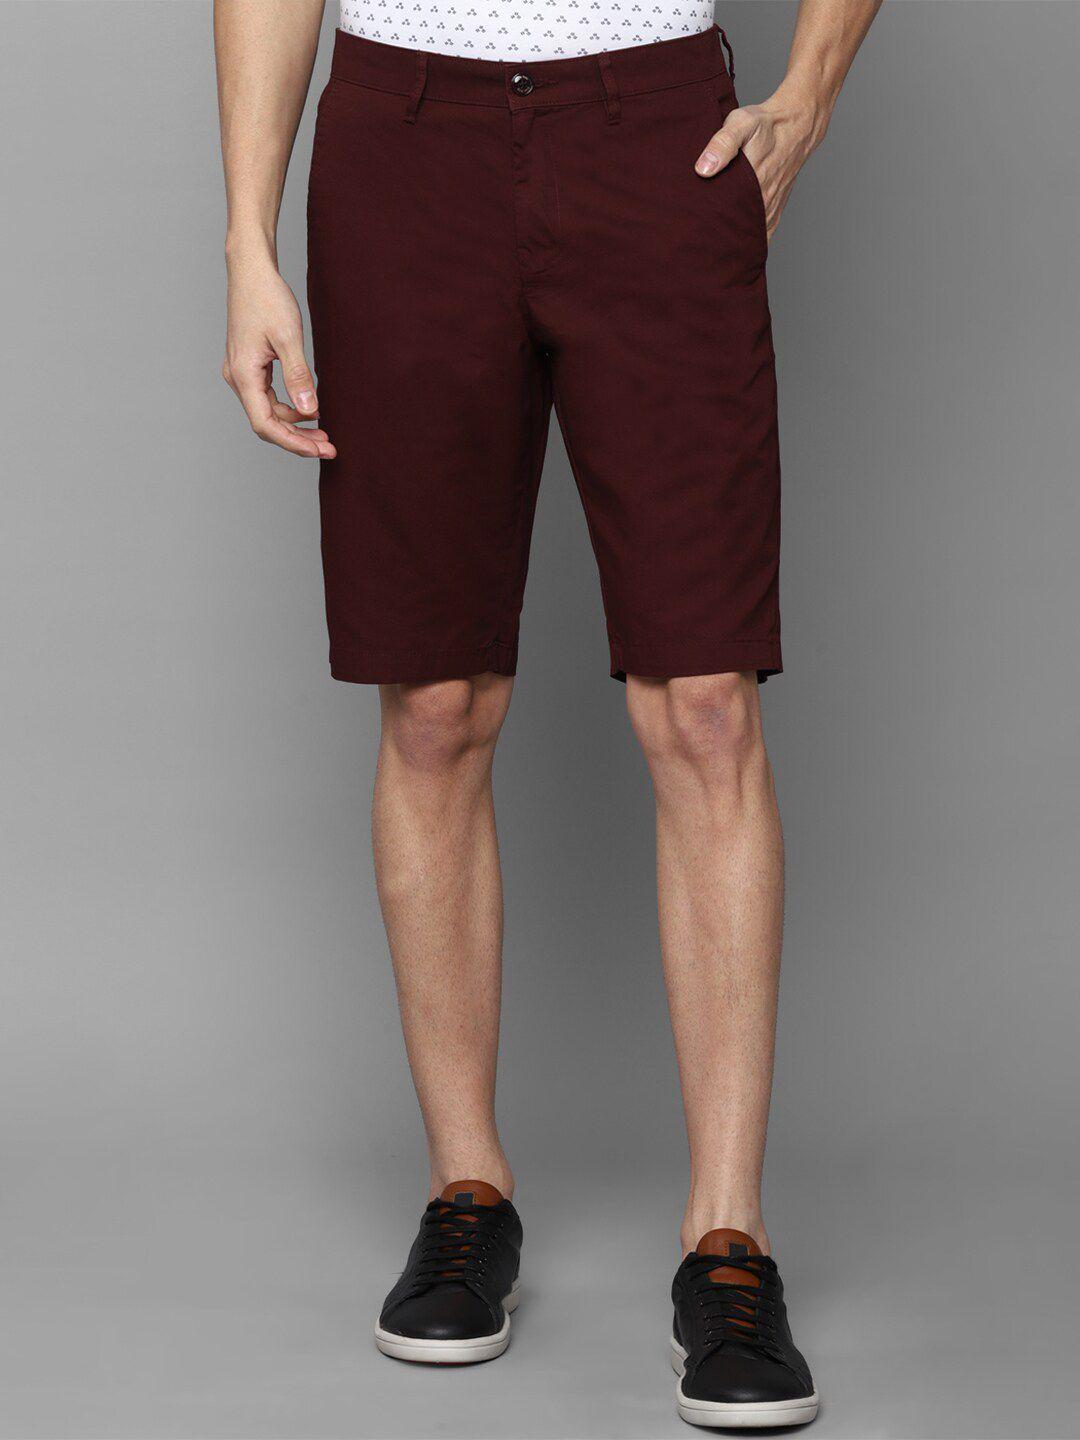 allen solly men maroon slim fit casual shorts